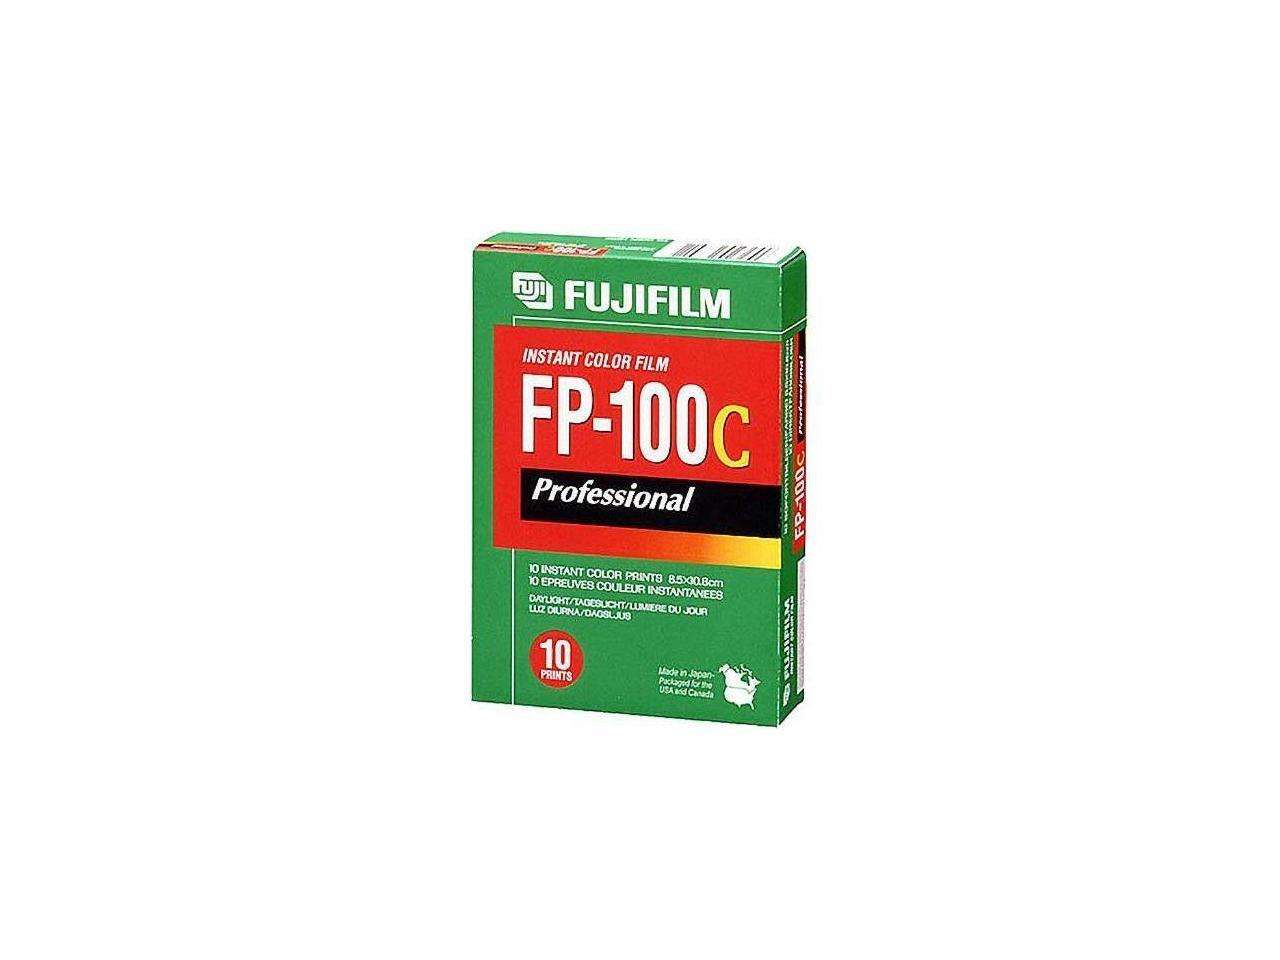 Fujifilm FP-100C Professional Instant Color Film ISO 100 (10 Exposure, Glossy)